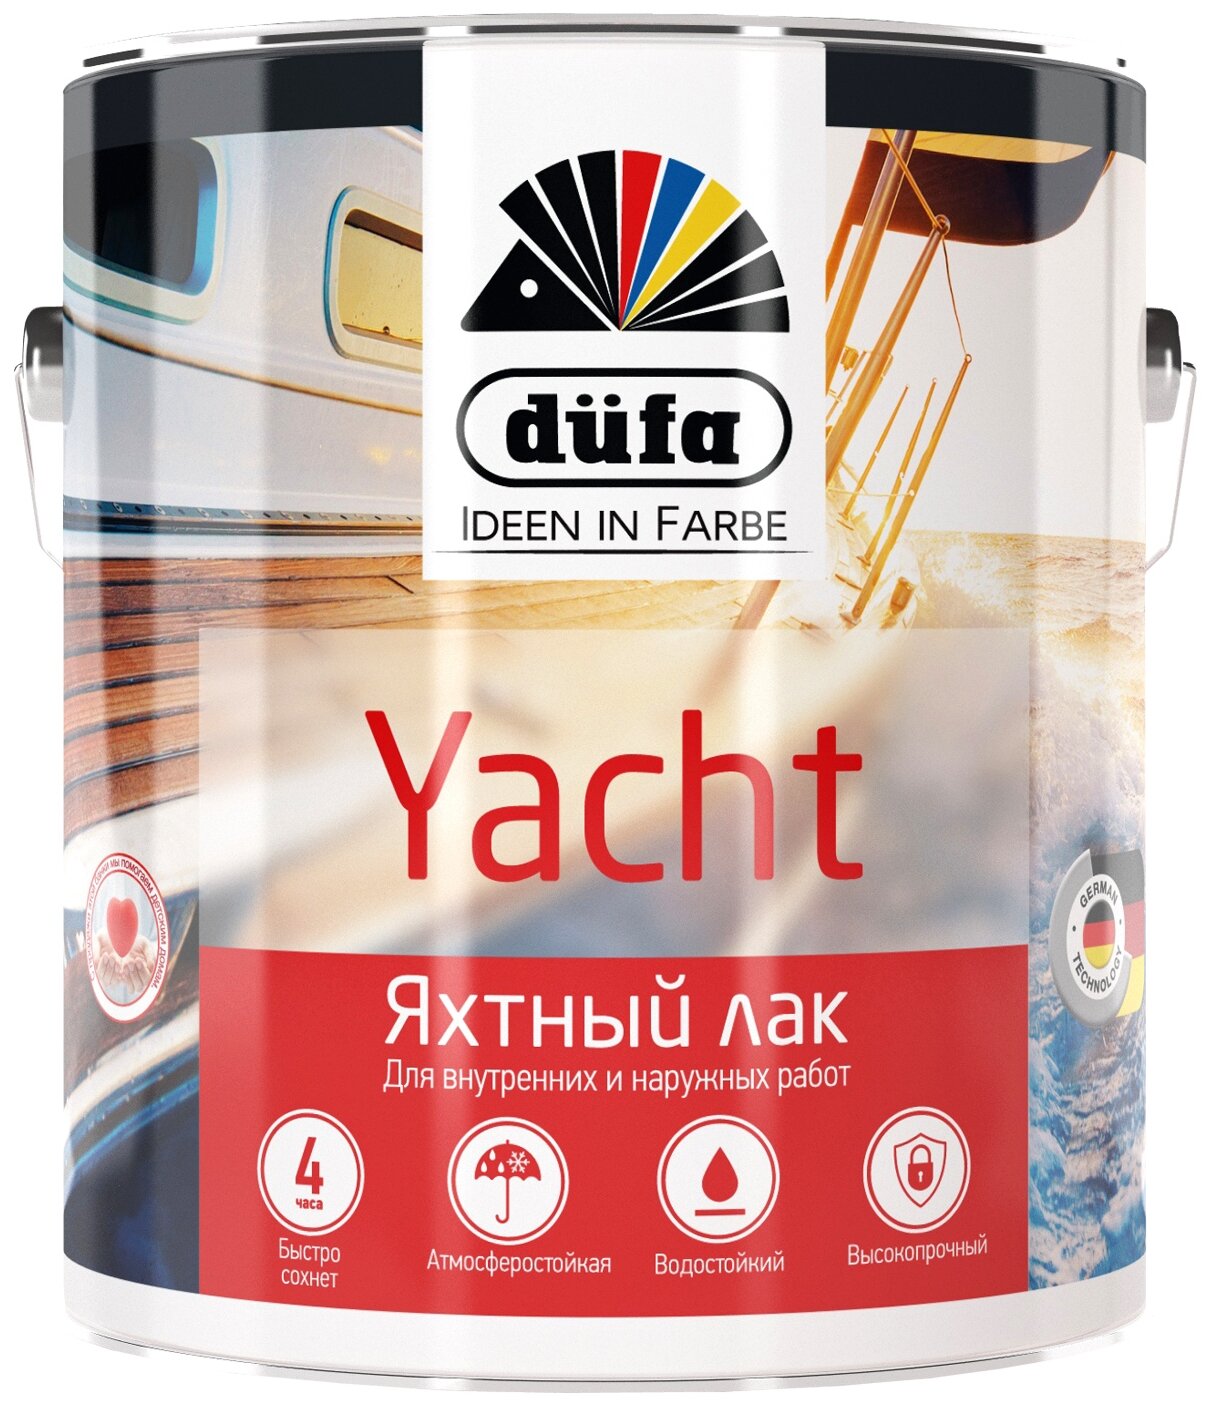   Dufa Retail Yacht  (0,75)